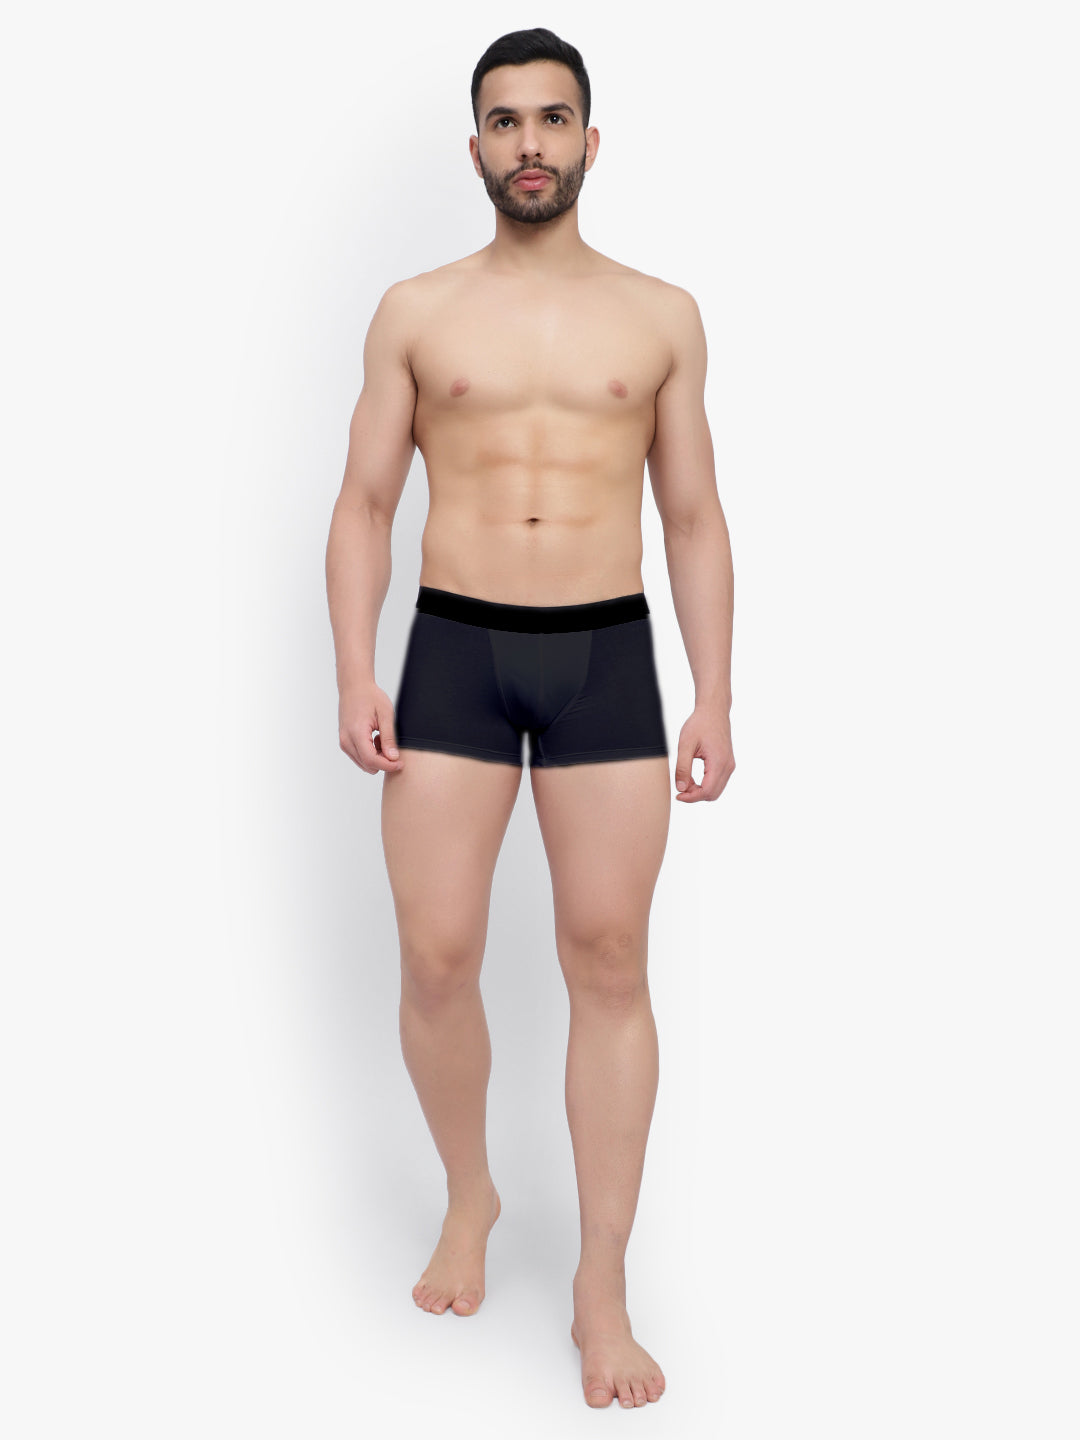  Buy comfortable men's trunk underwear at best price online in India